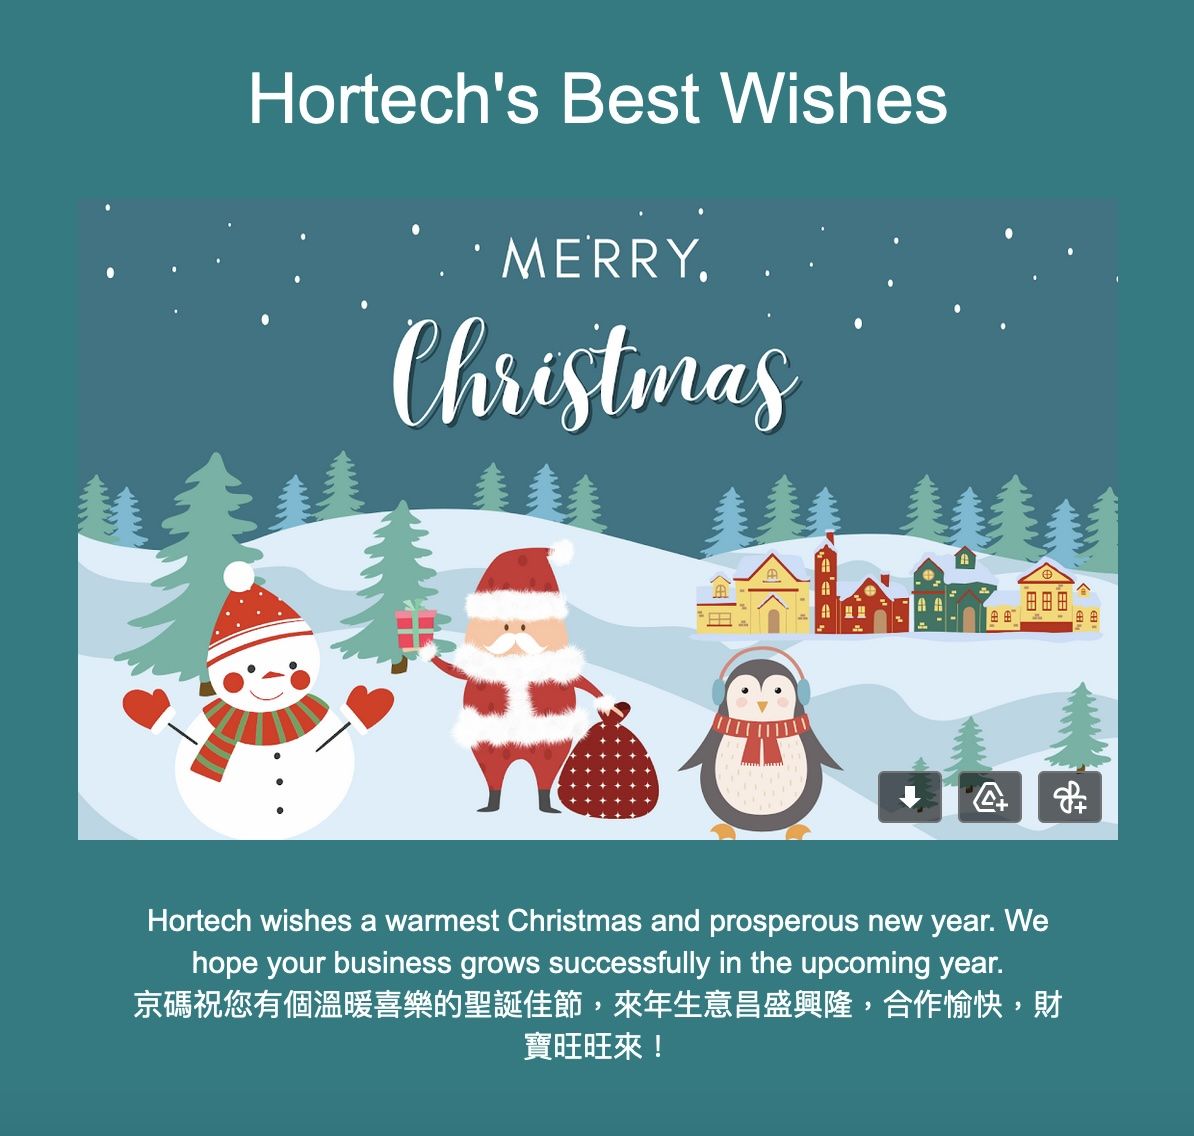 Hortechは皆様にメリークリスマスと幸せな新年をお祈りします。